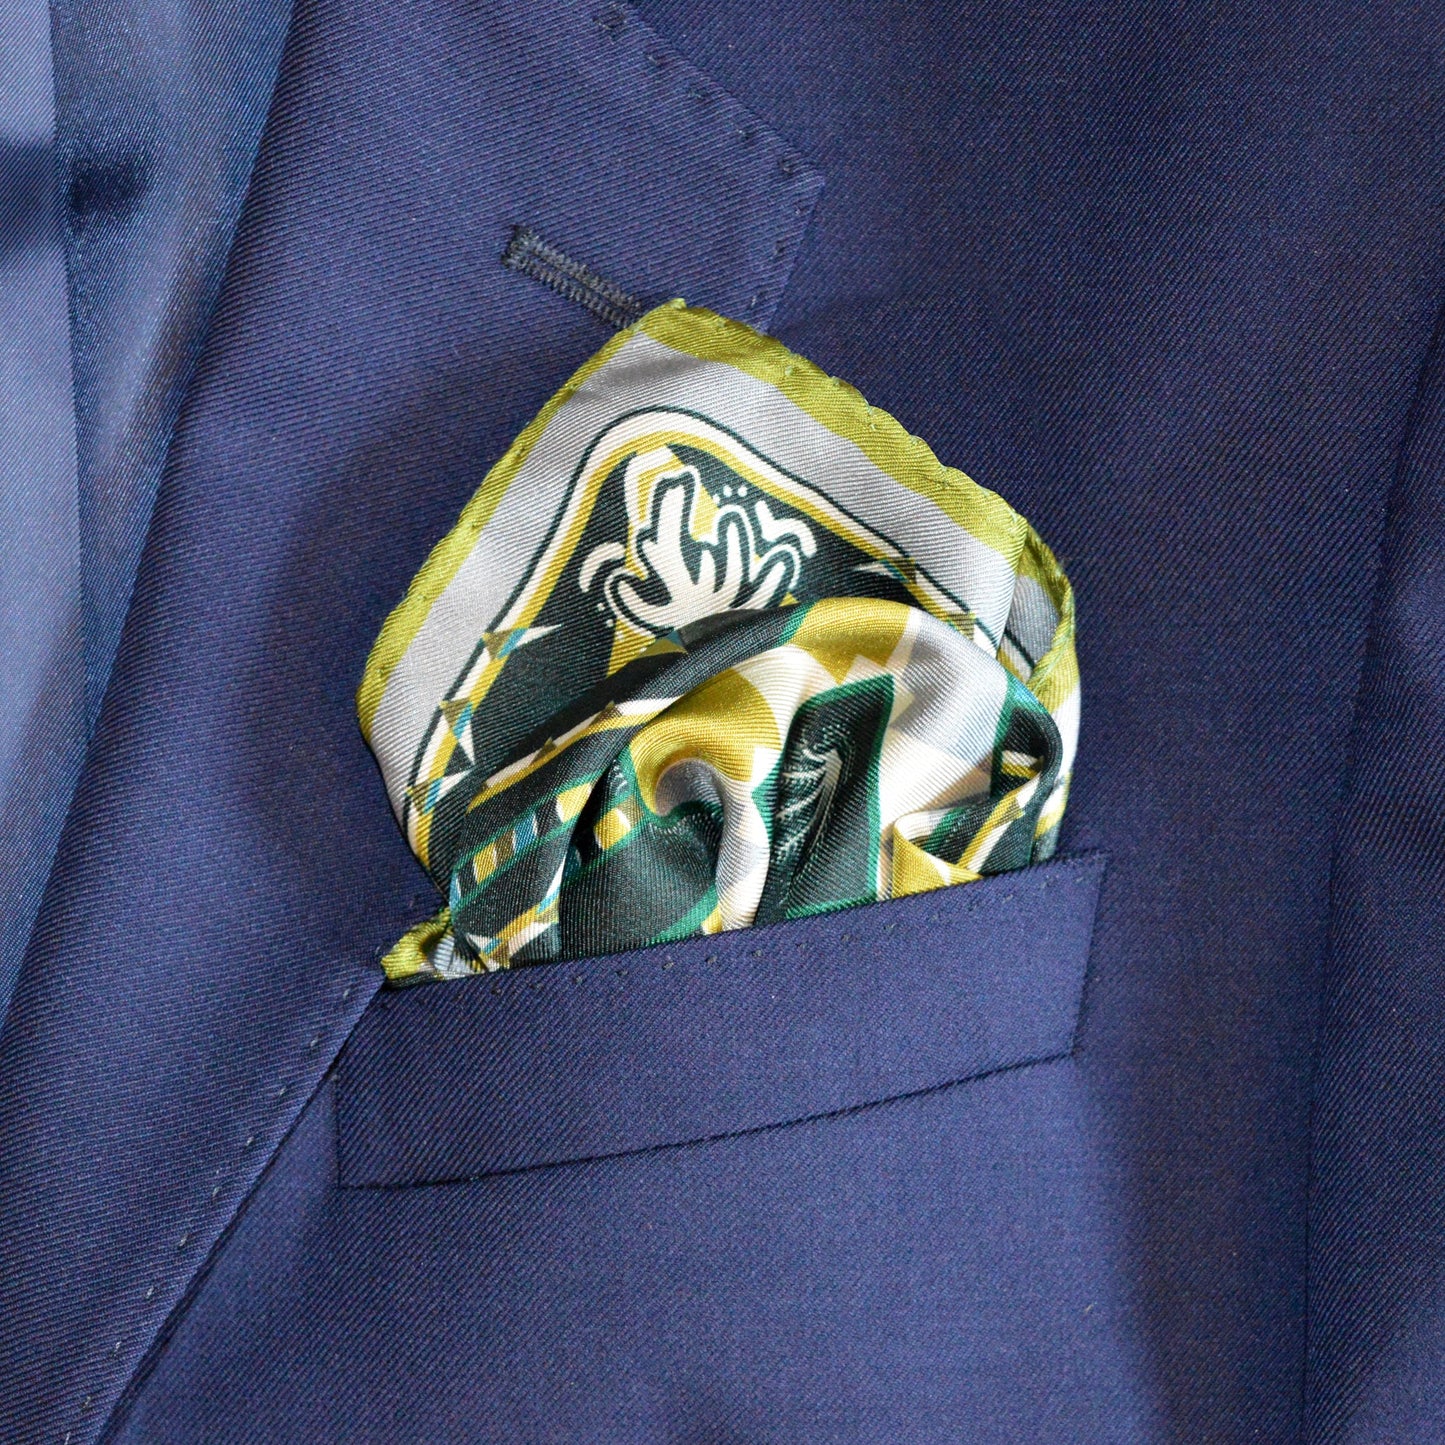 elegante fazzoletto da taschino in seta piegato e inserito nella tasca della giacca con disegno in palette verde e ocra